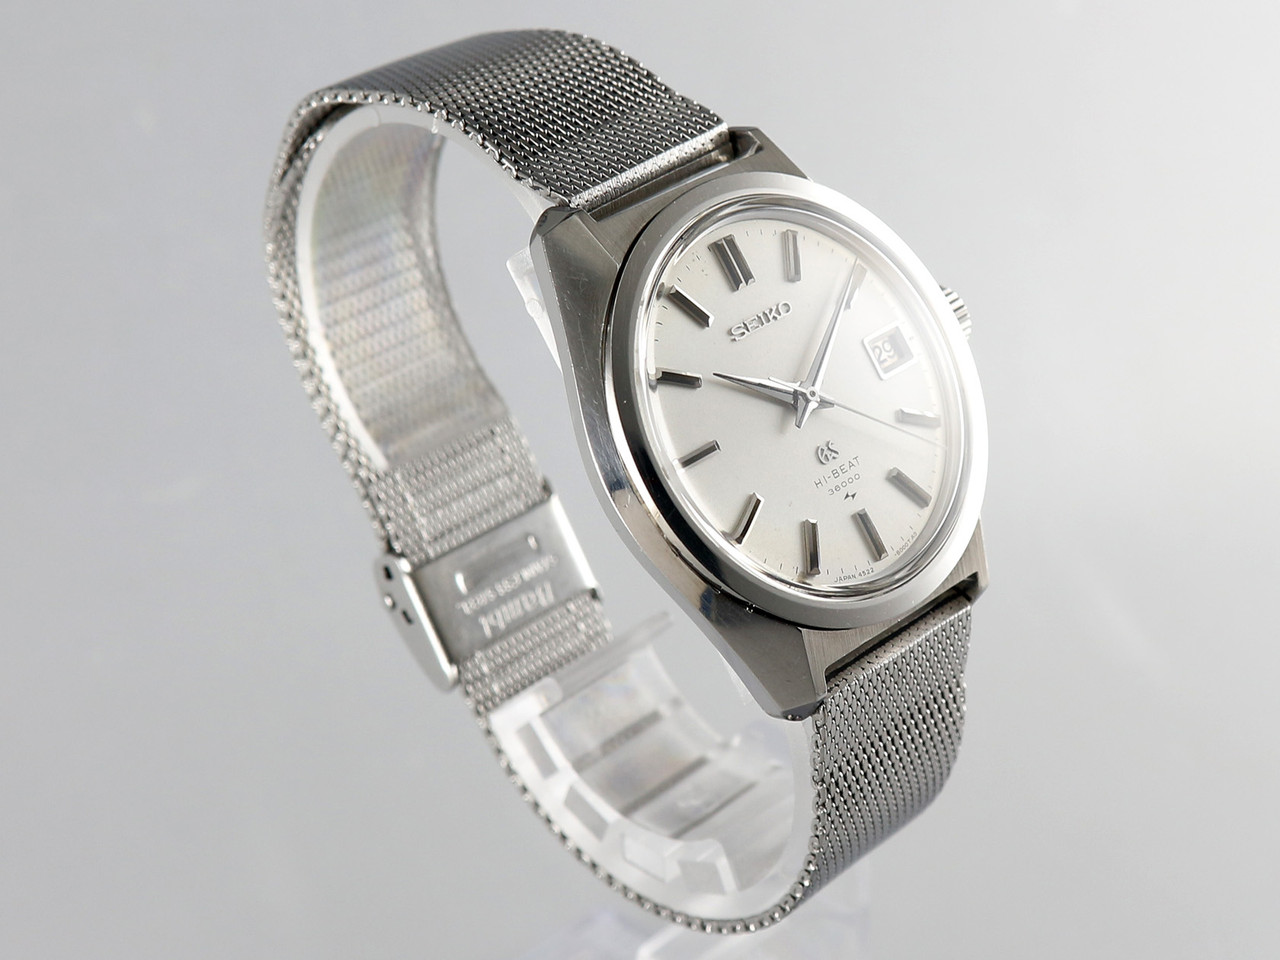 Seiko Grand Seiko GS45 Hi-Beat 36000 bph VWS-1898 - Vintage Watch Services